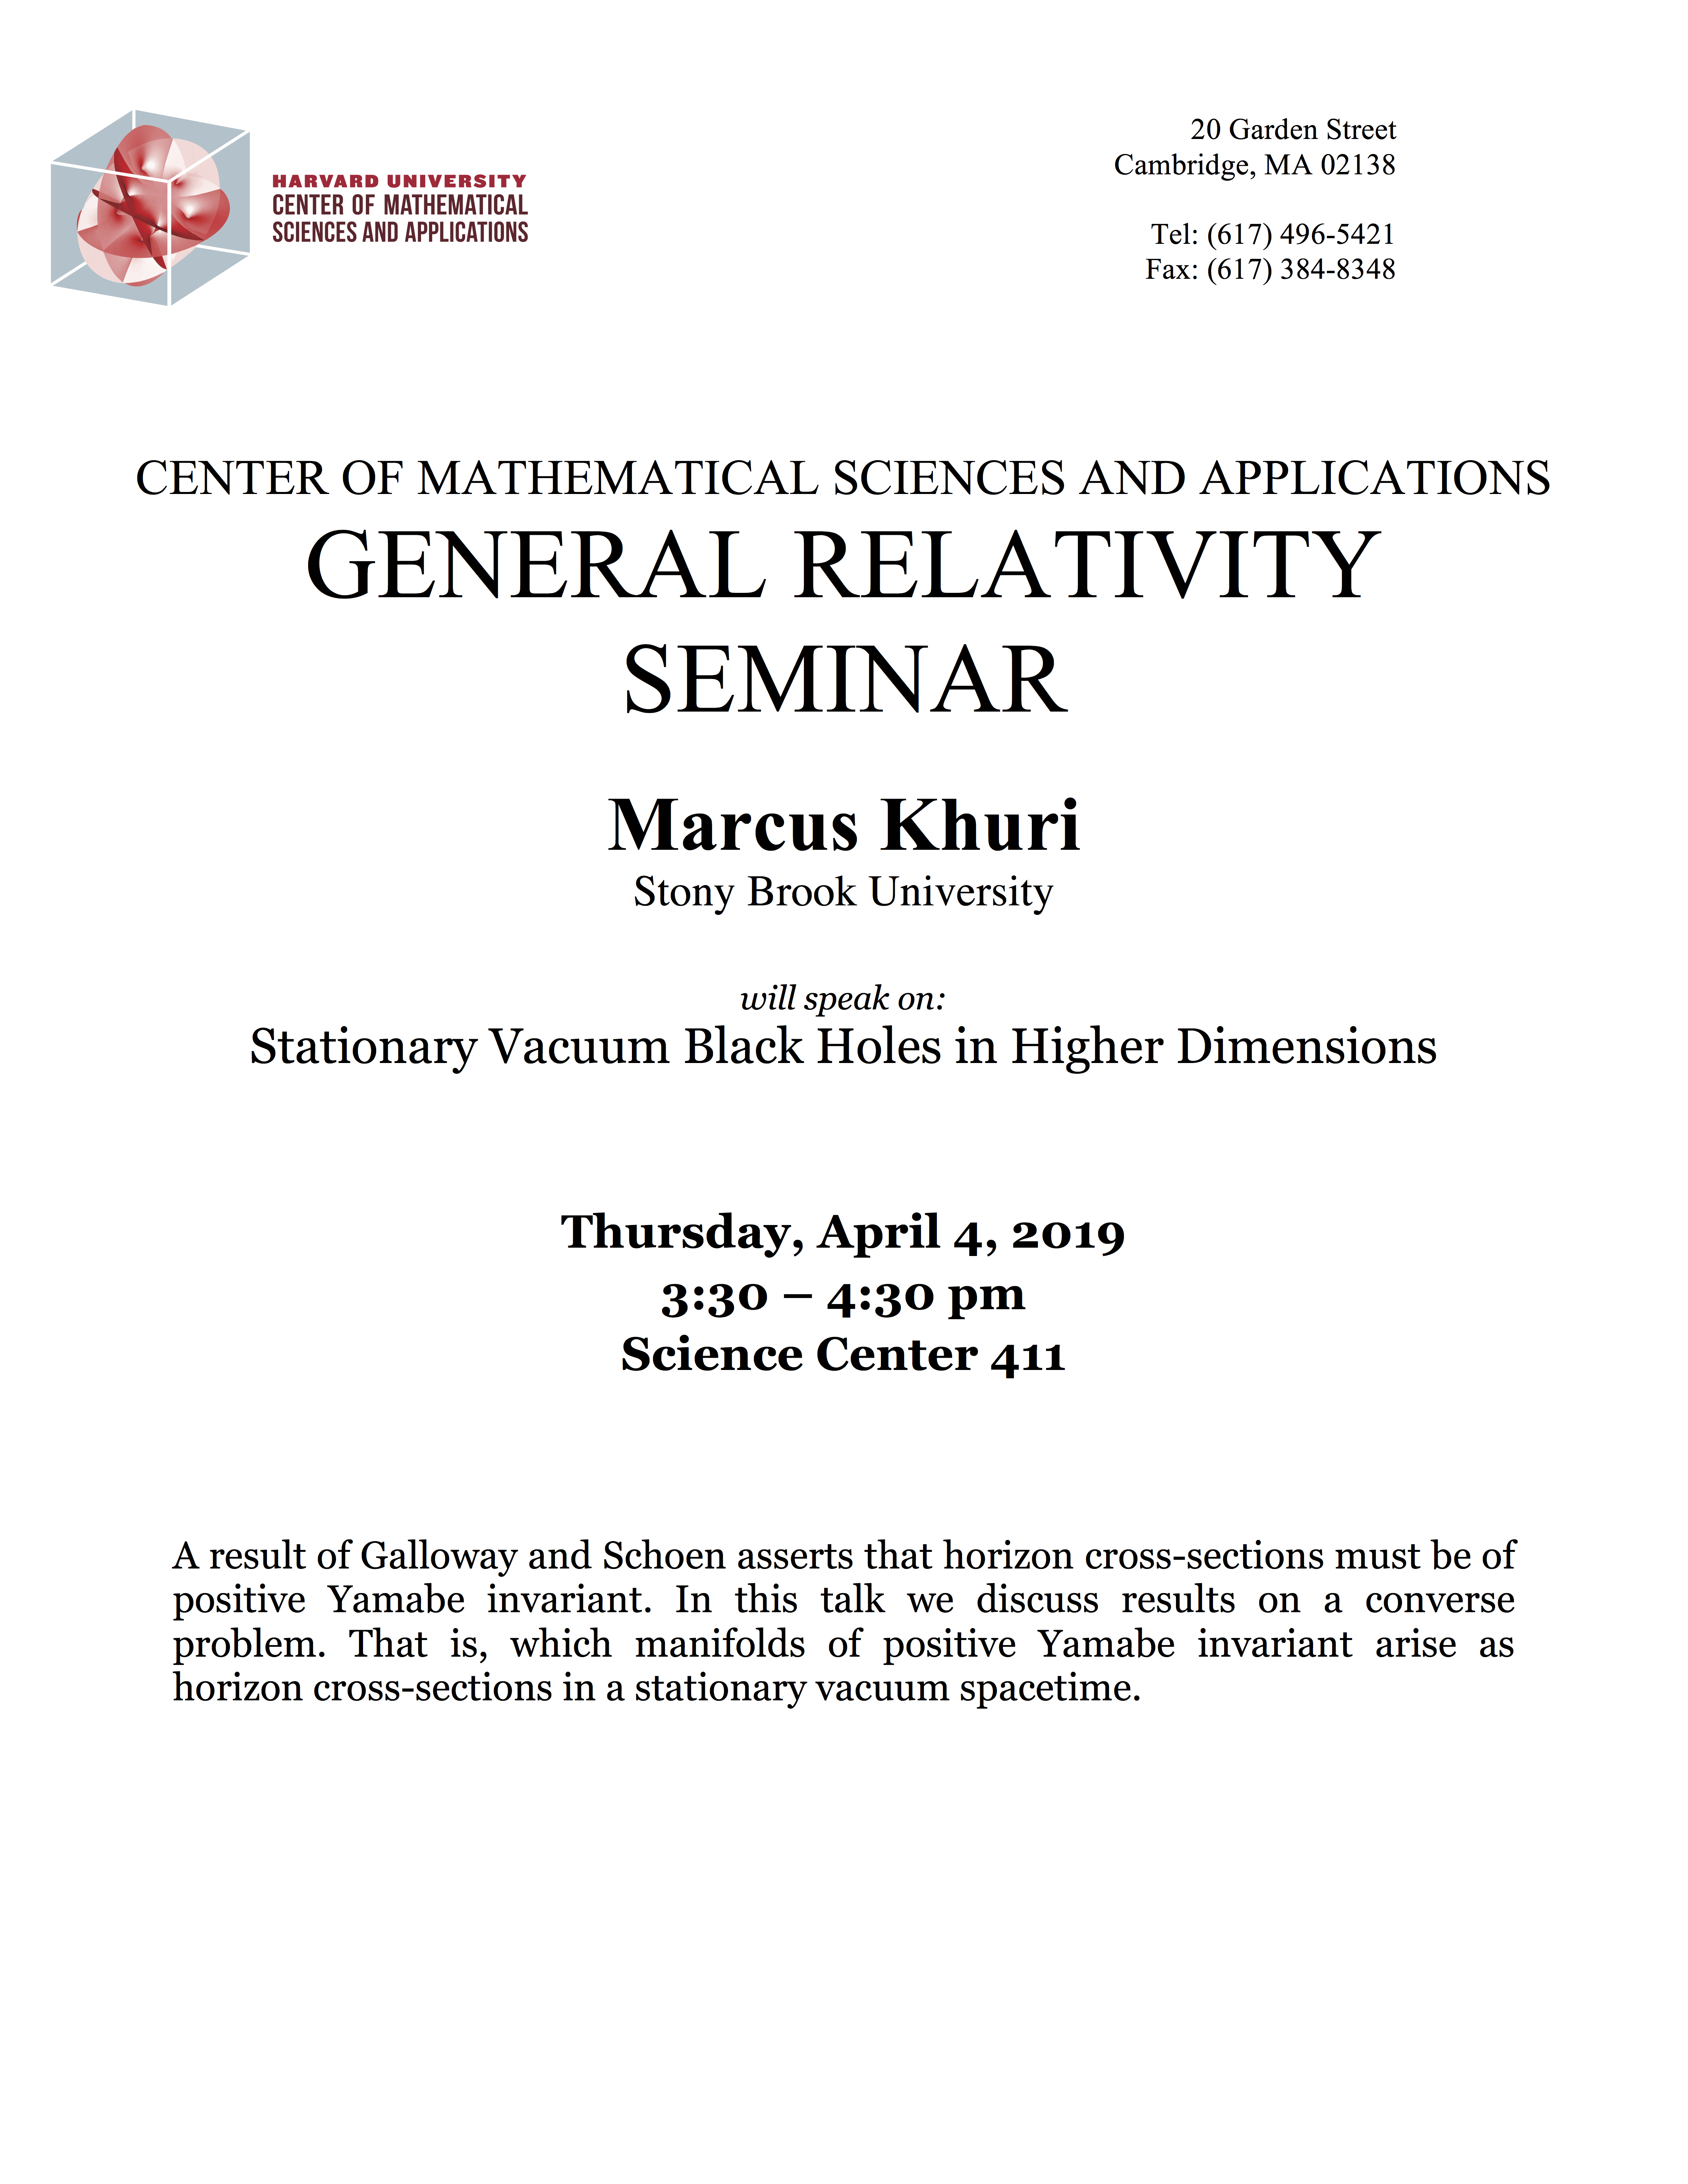 4/4/2019 General Relativity Seminar